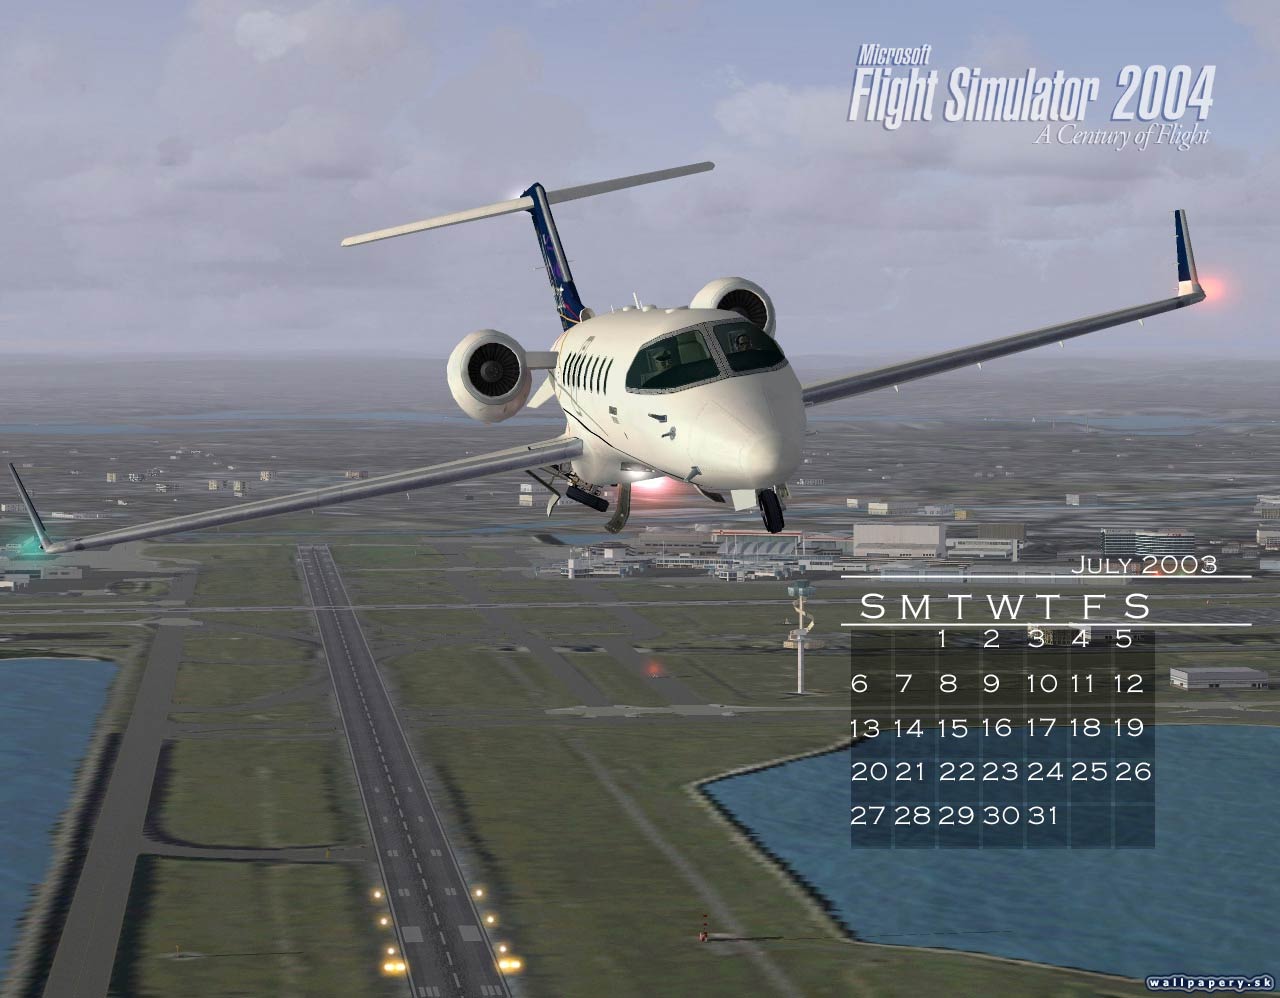 Microsoft Flight Simulator 2004: A Century of Flight - wallpaper 7